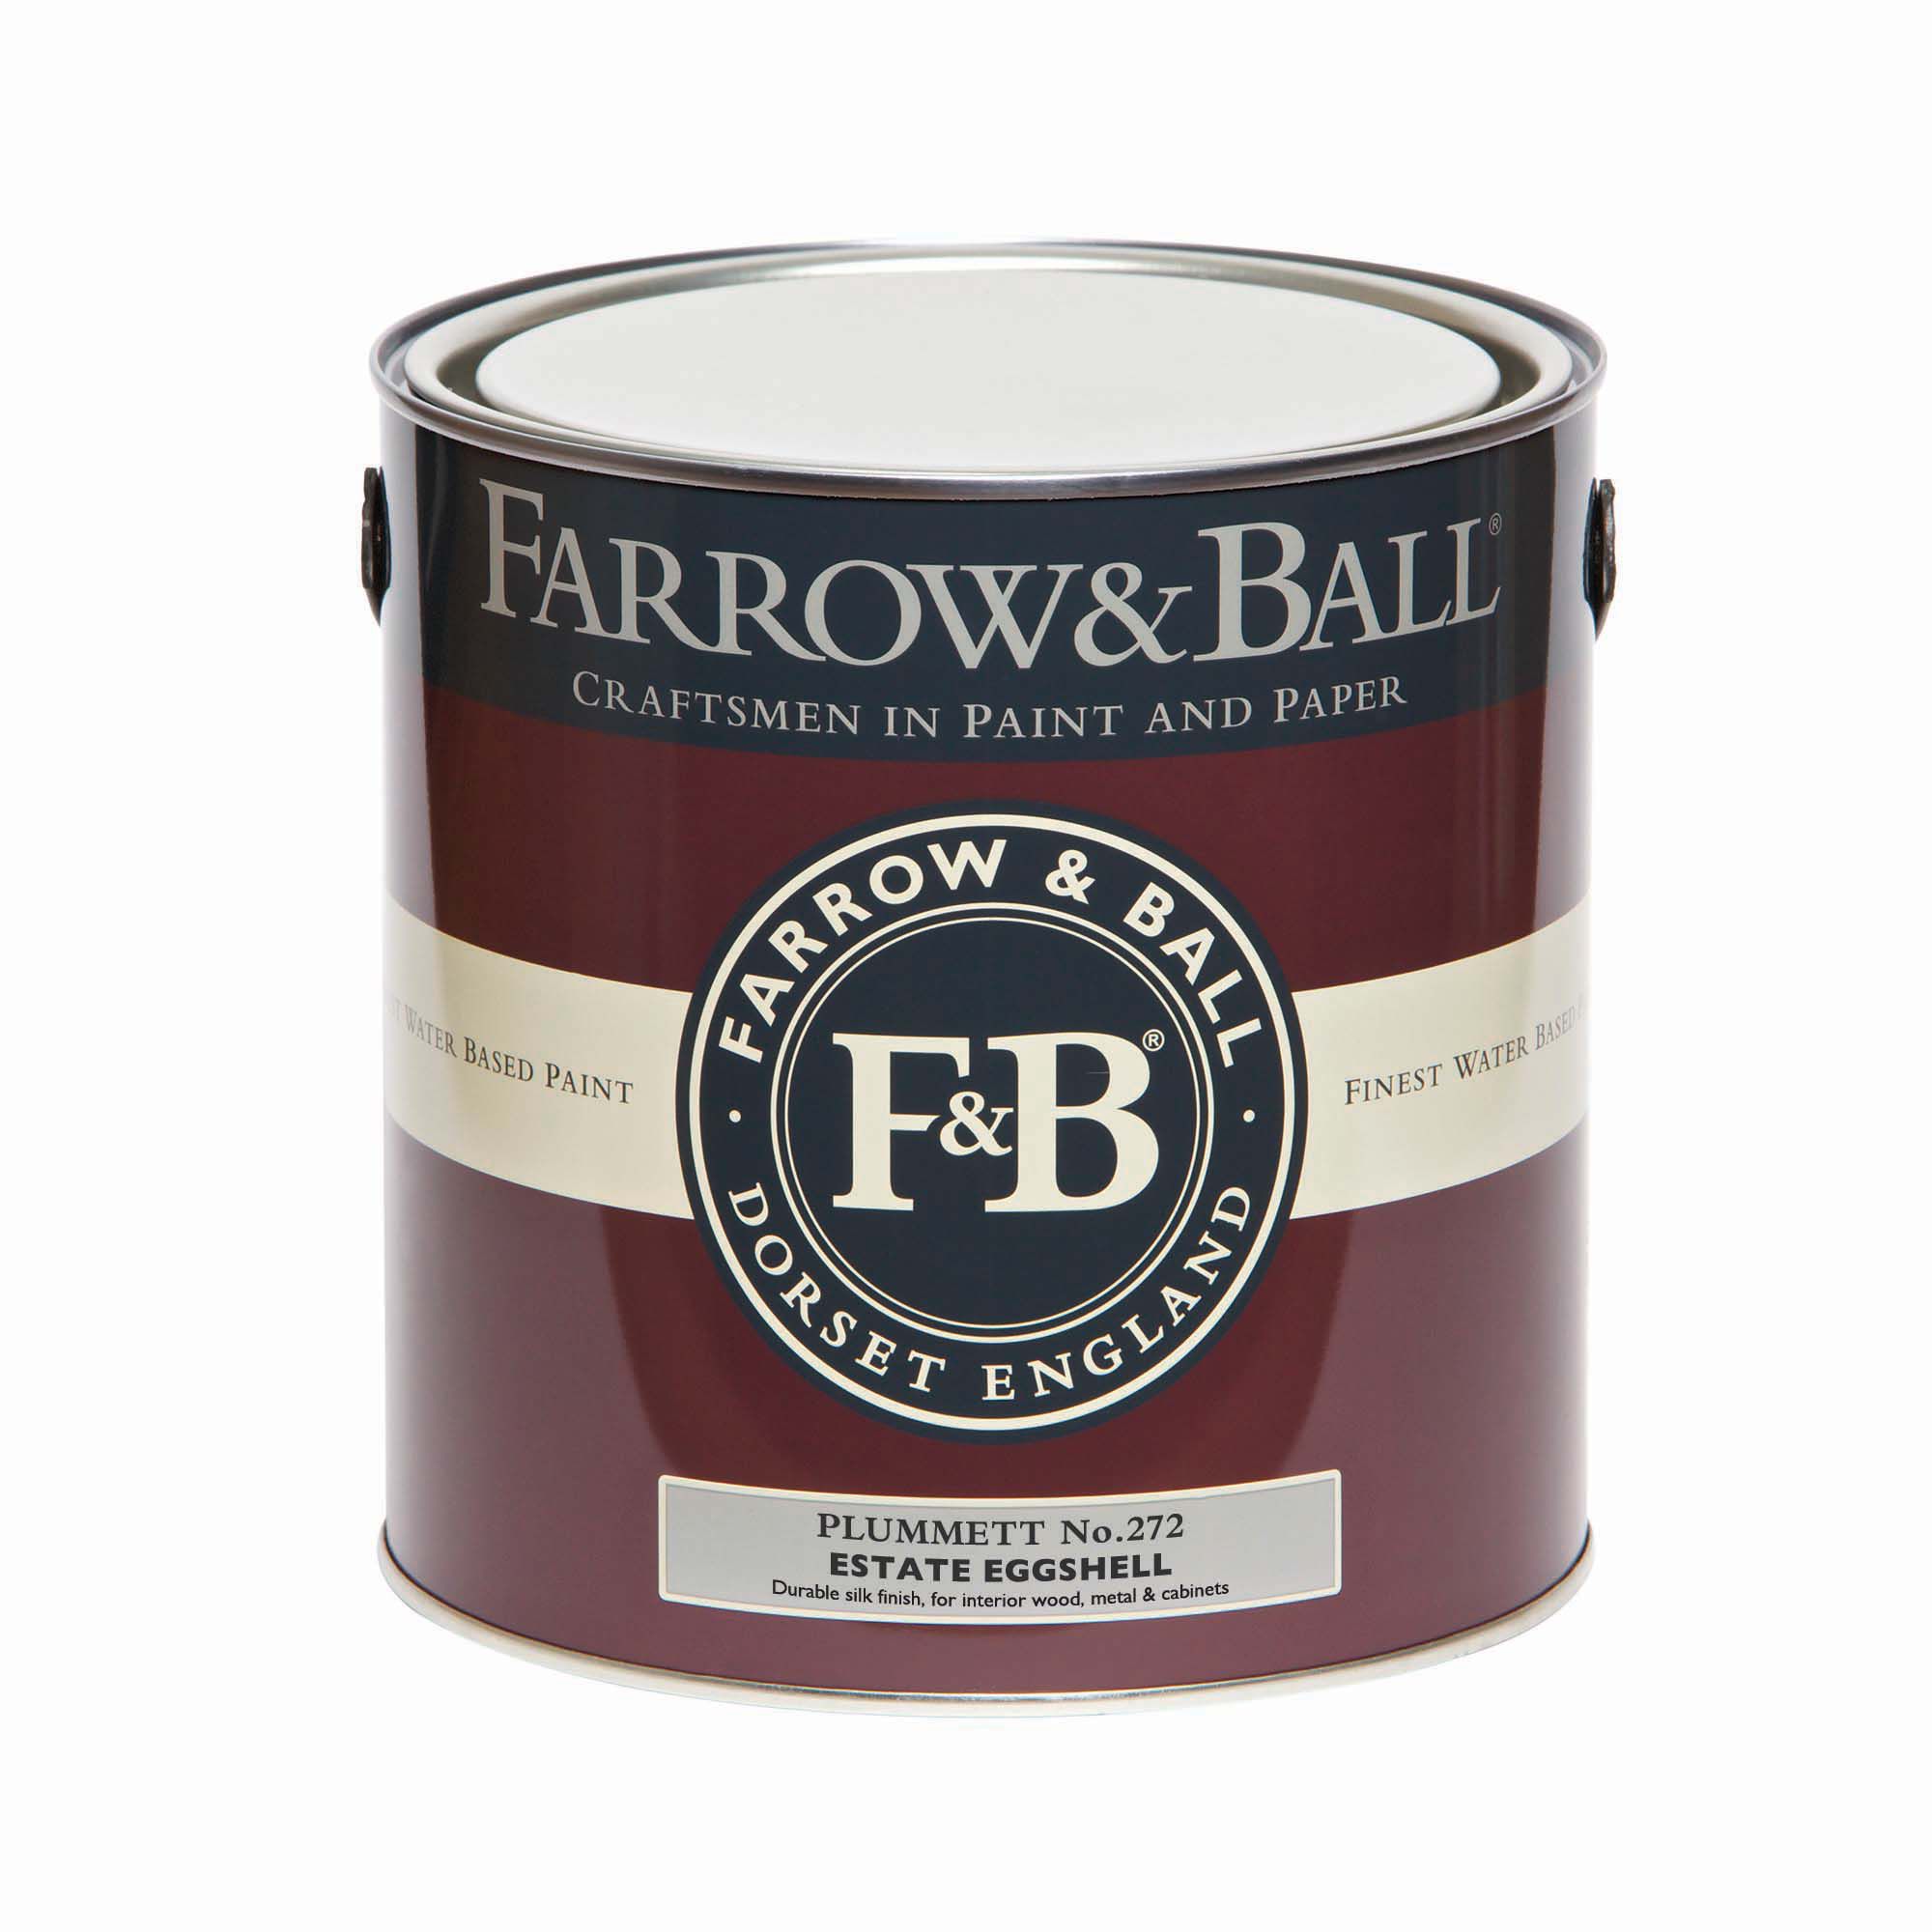 Farrow & Ball Estate Plummett No.272 Eggshell Paint, 2.5L